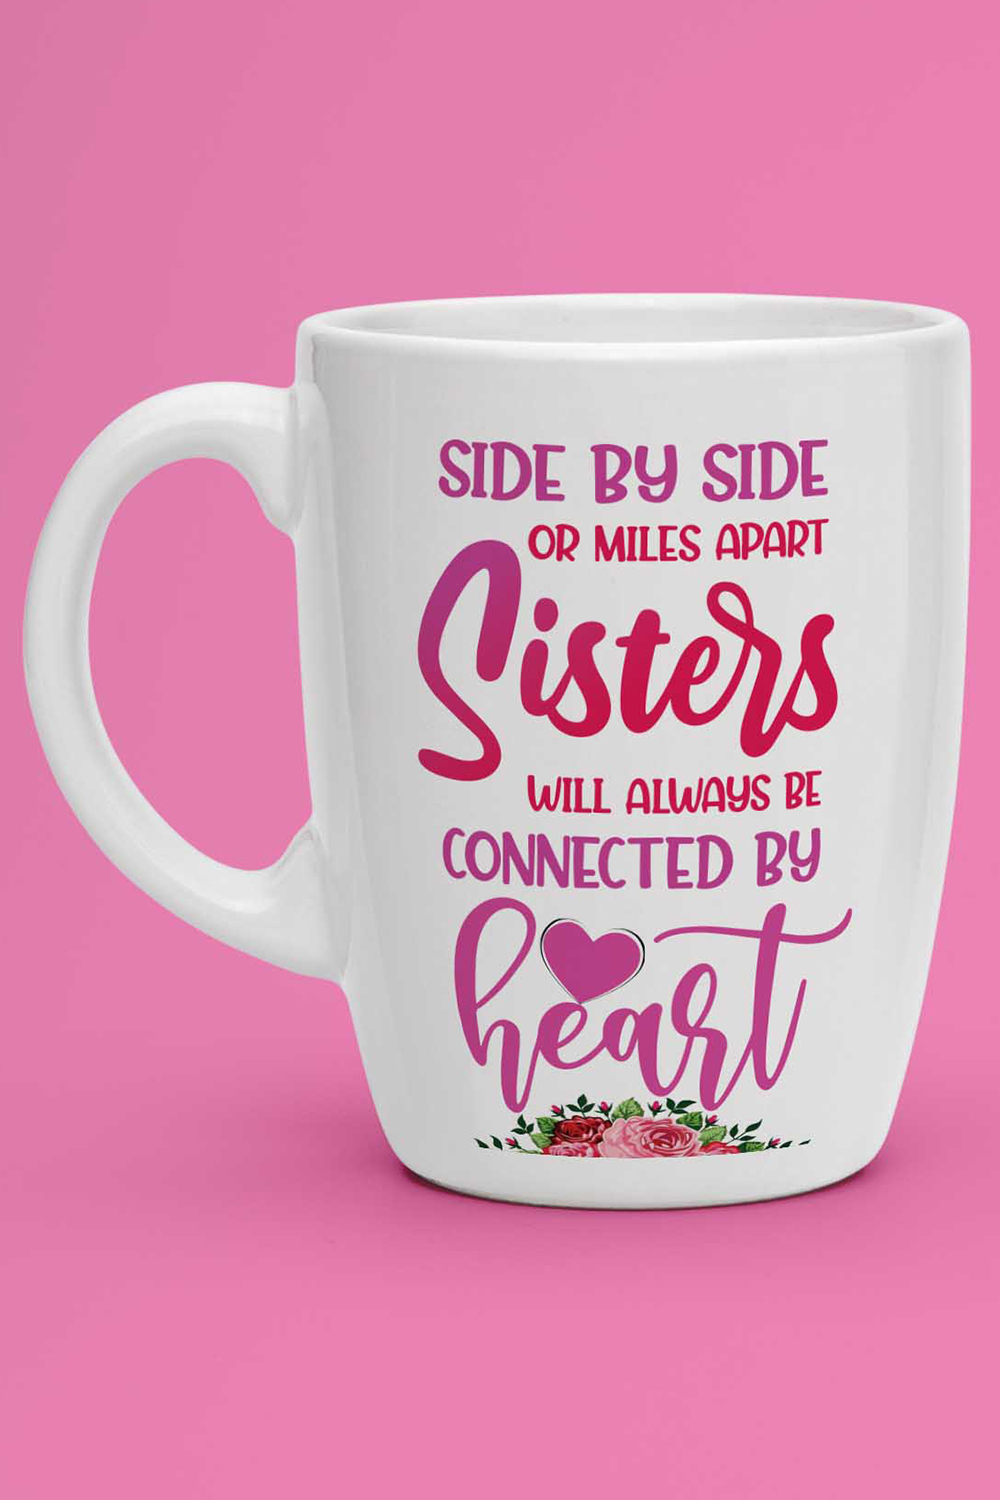 Sister Love Mug Sublimation Designs pinterest image.